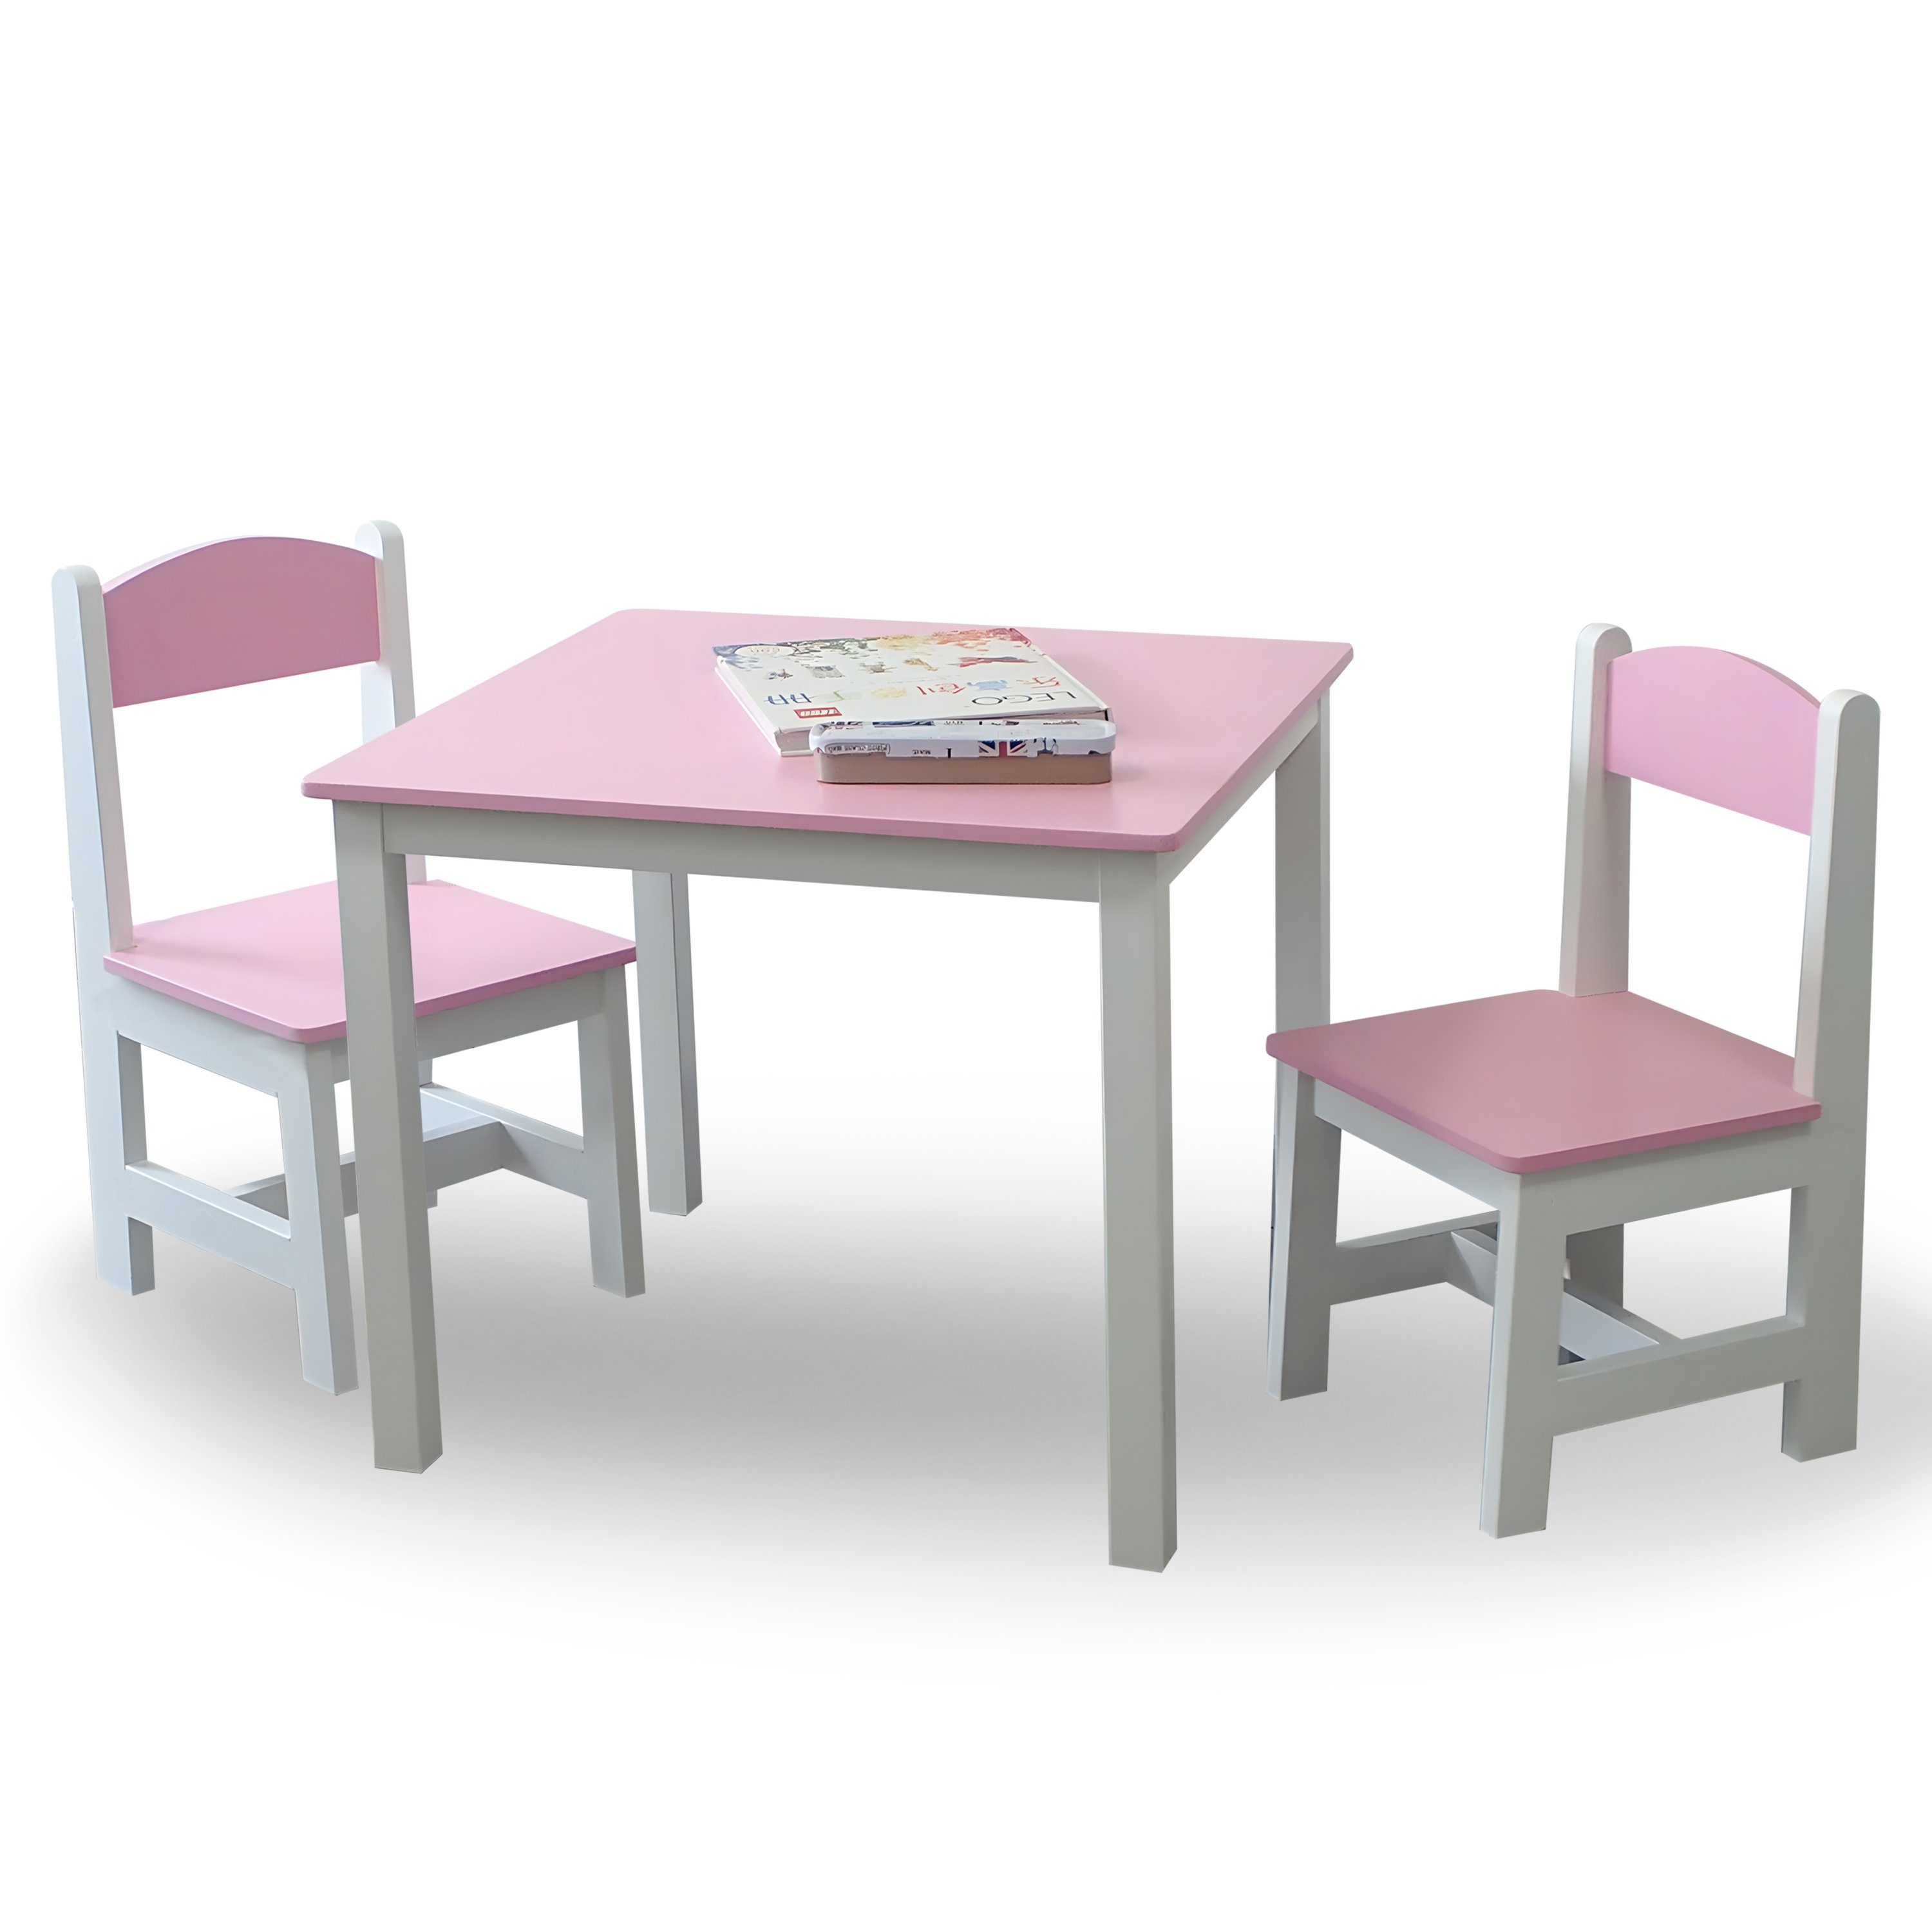 habeig Kindersitzgruppe Kindertisch & 2 Stühle Kindermöbelset Maltisch Hocker 60x50x50cm Rosa+Weiß